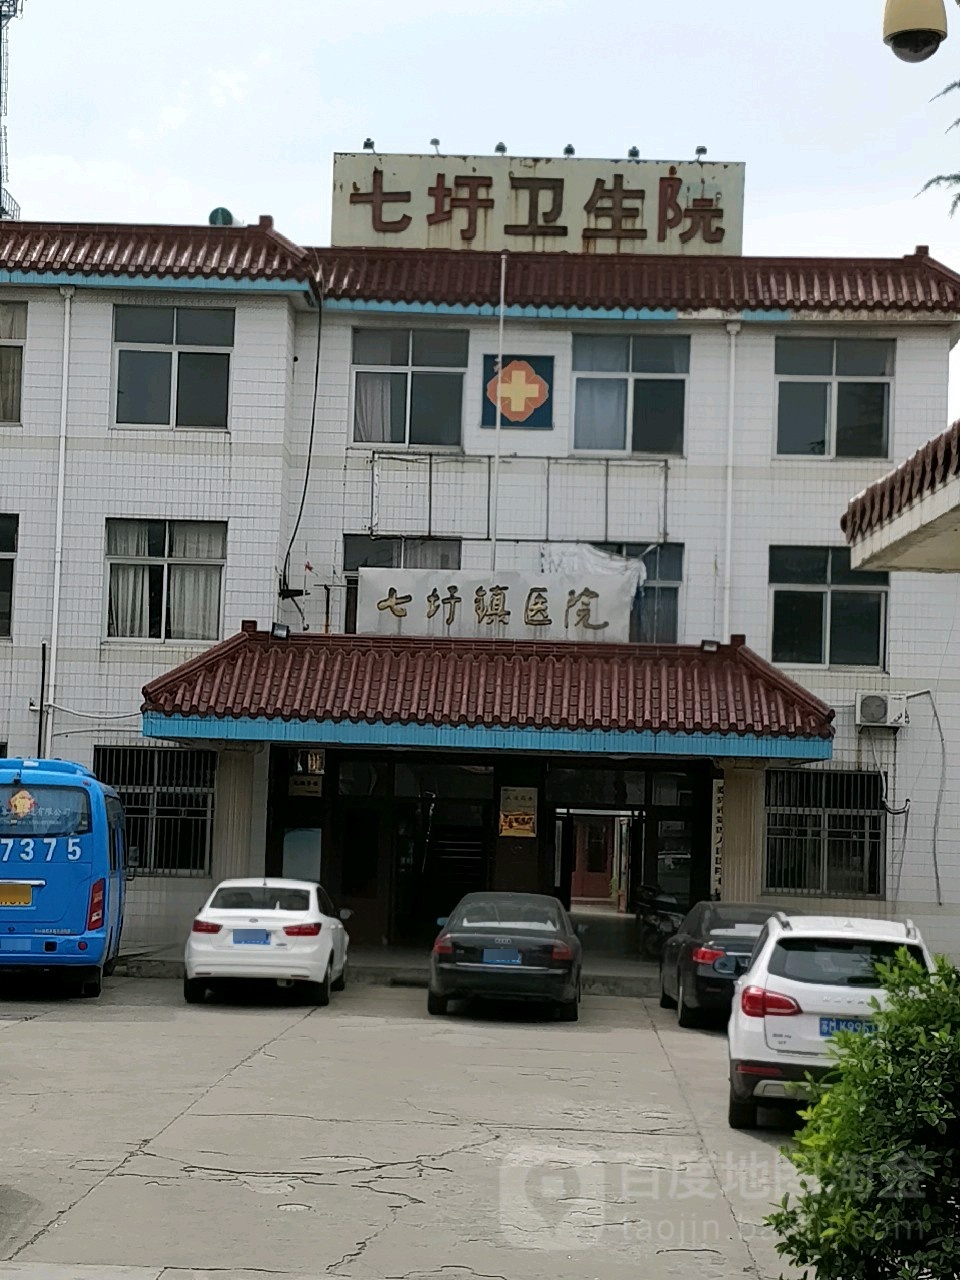 七圩镇医院